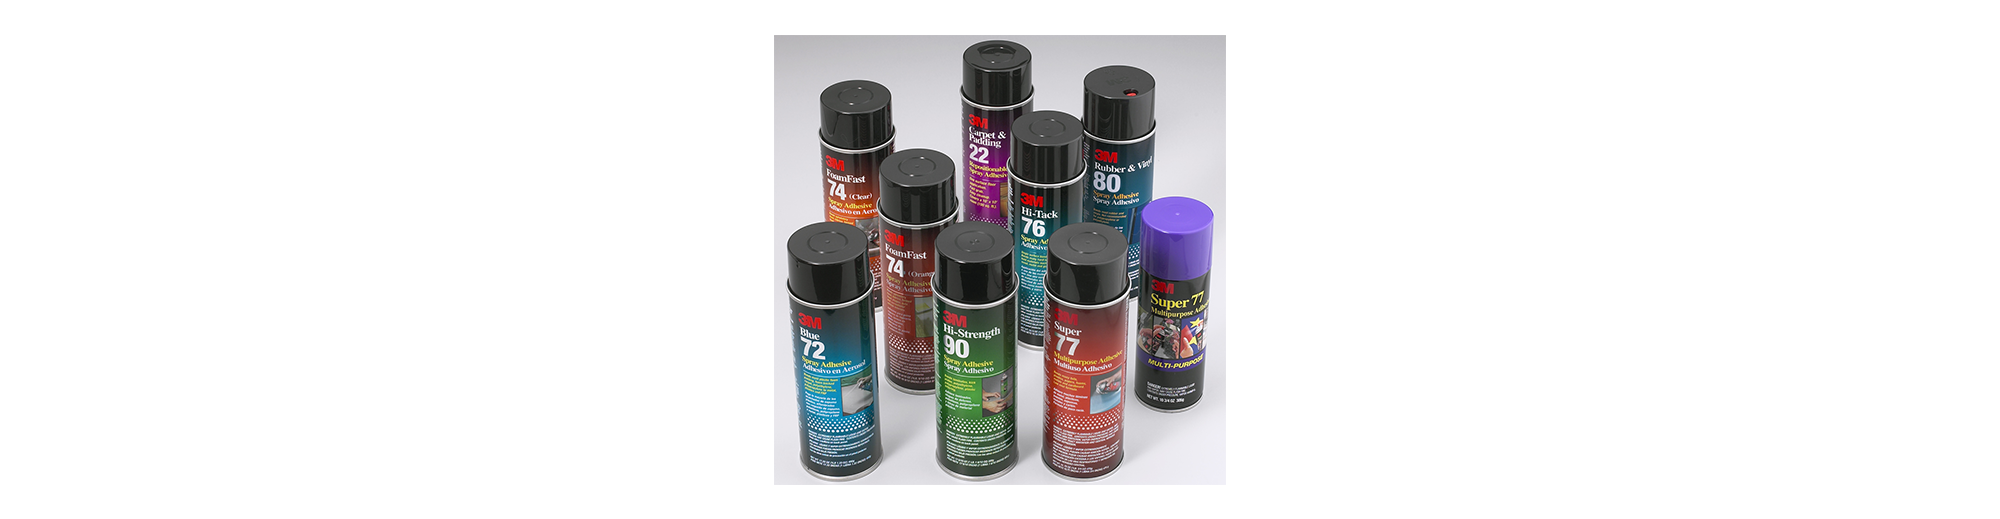 3M Spray Adhesive 90 vs. 77: In-Depth Comparison - Sticky Aide